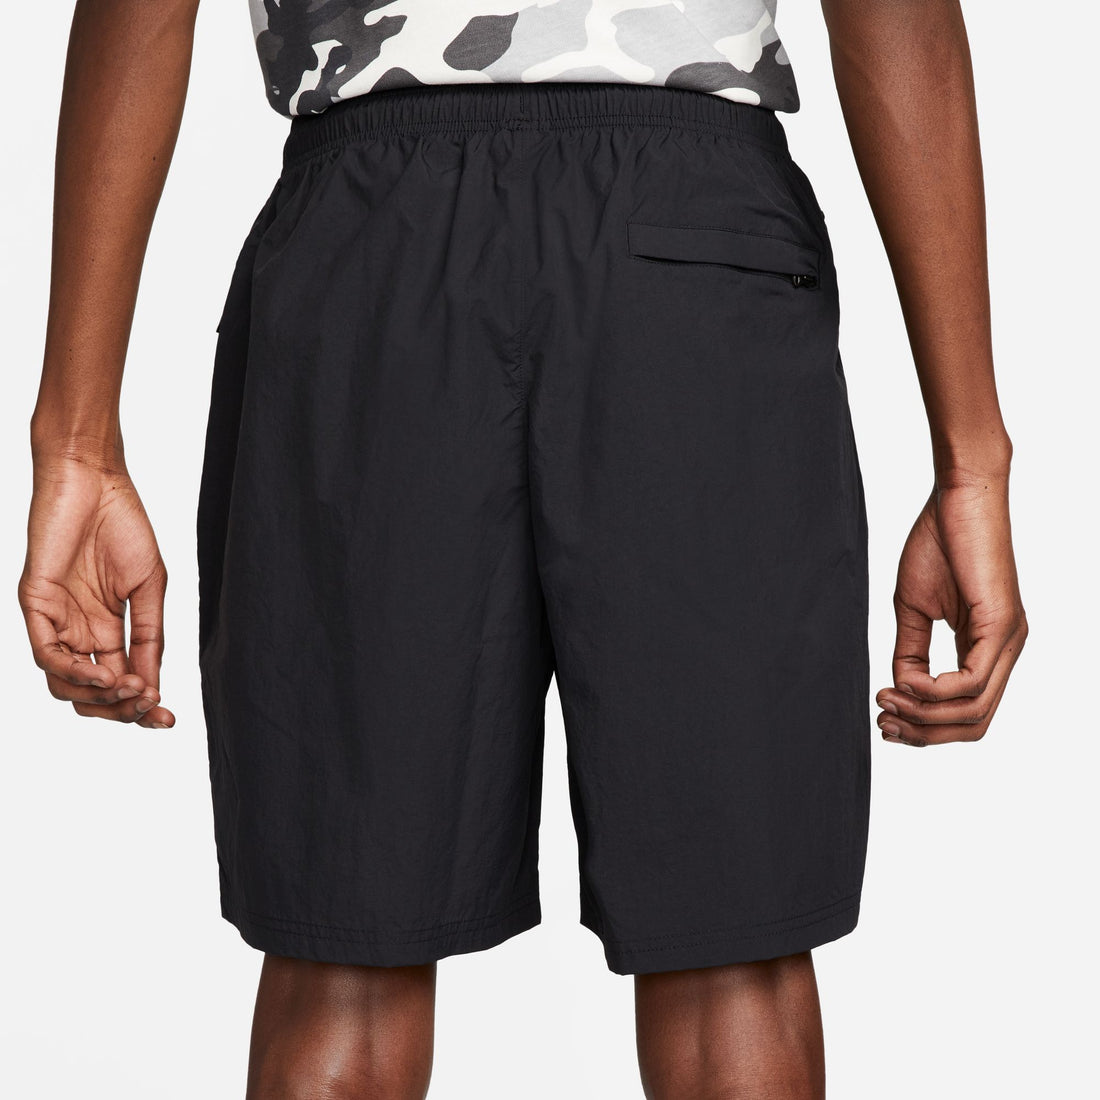 Nike Solo Swoosh Woven Shorts (Black/ White)